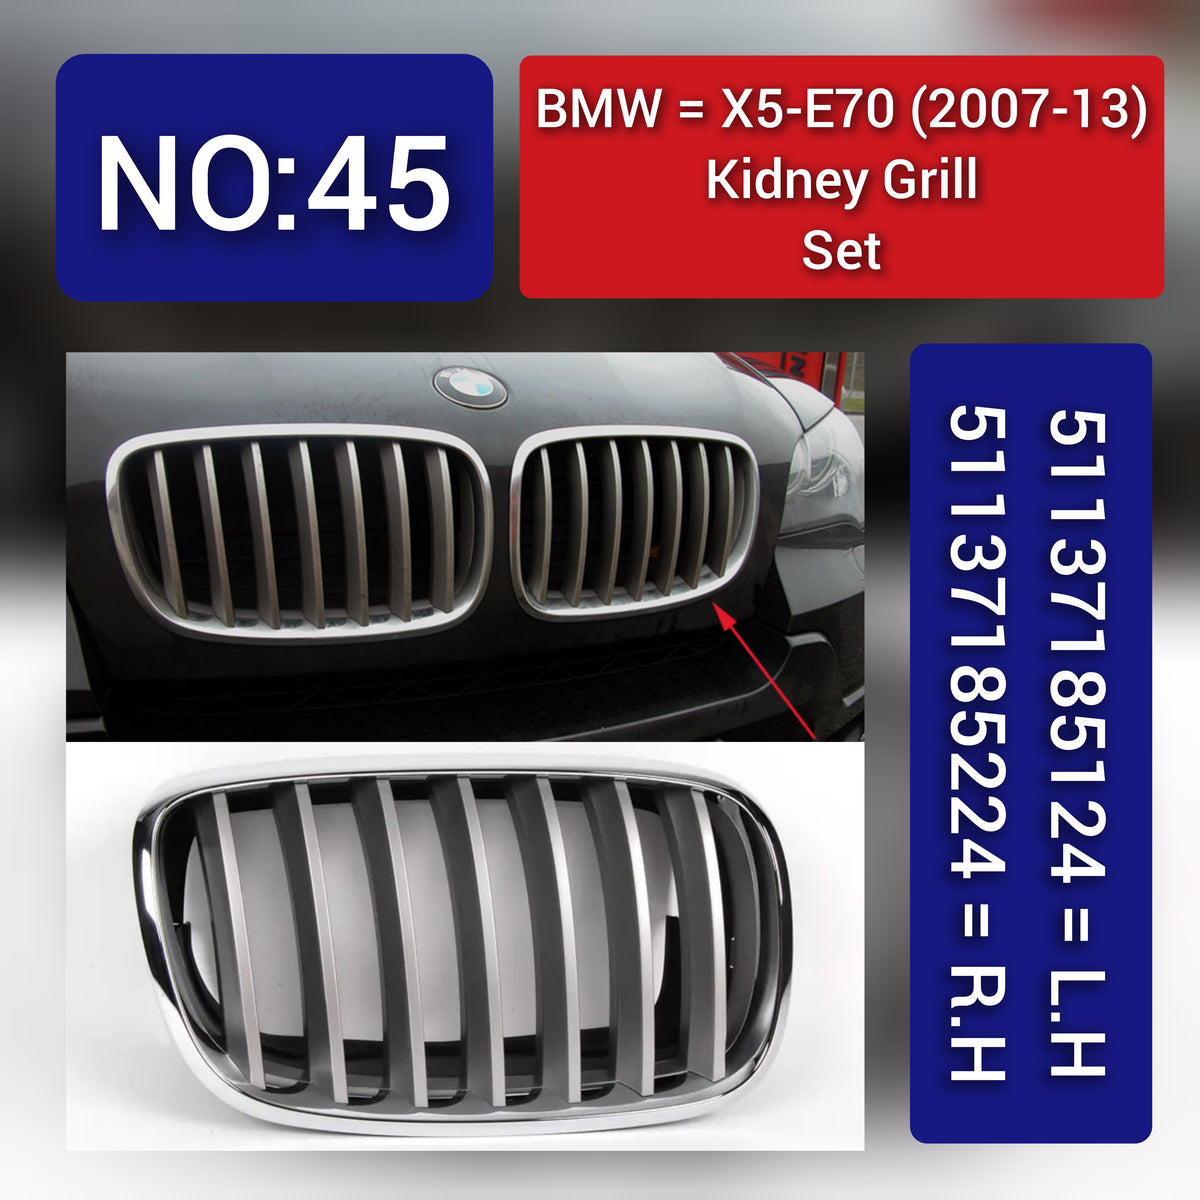 BMW = X5-E70 (2007-13) Kidney Grill Set 51137185124 = L.H, 51137185224 = R.H Tag 45